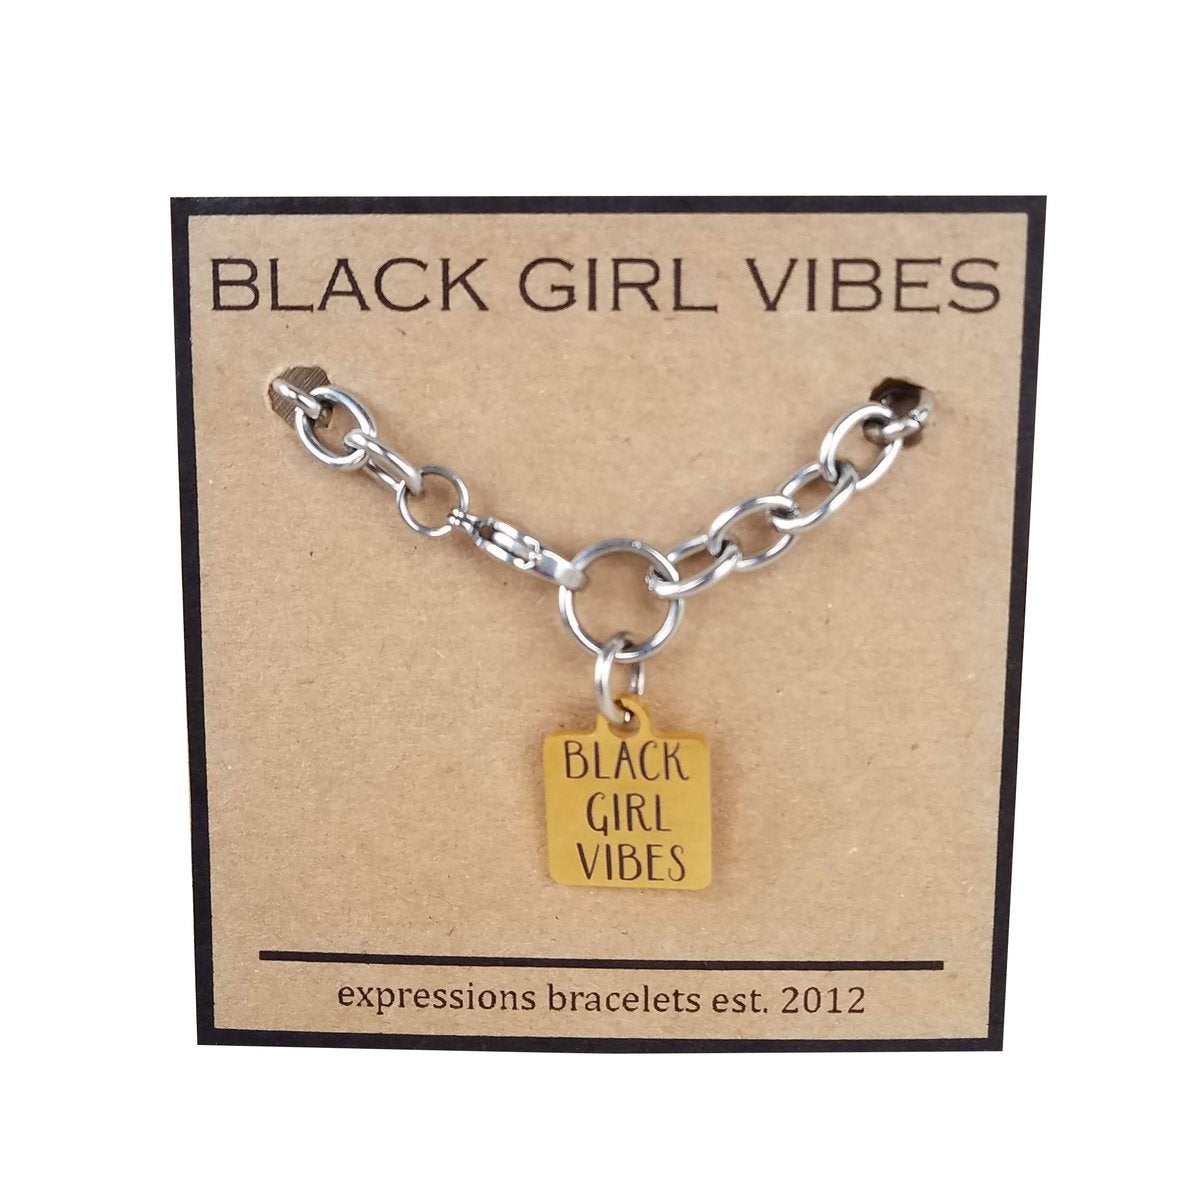 20 Gifts for Black Women by Black Women - 2022 Black Girl Gift